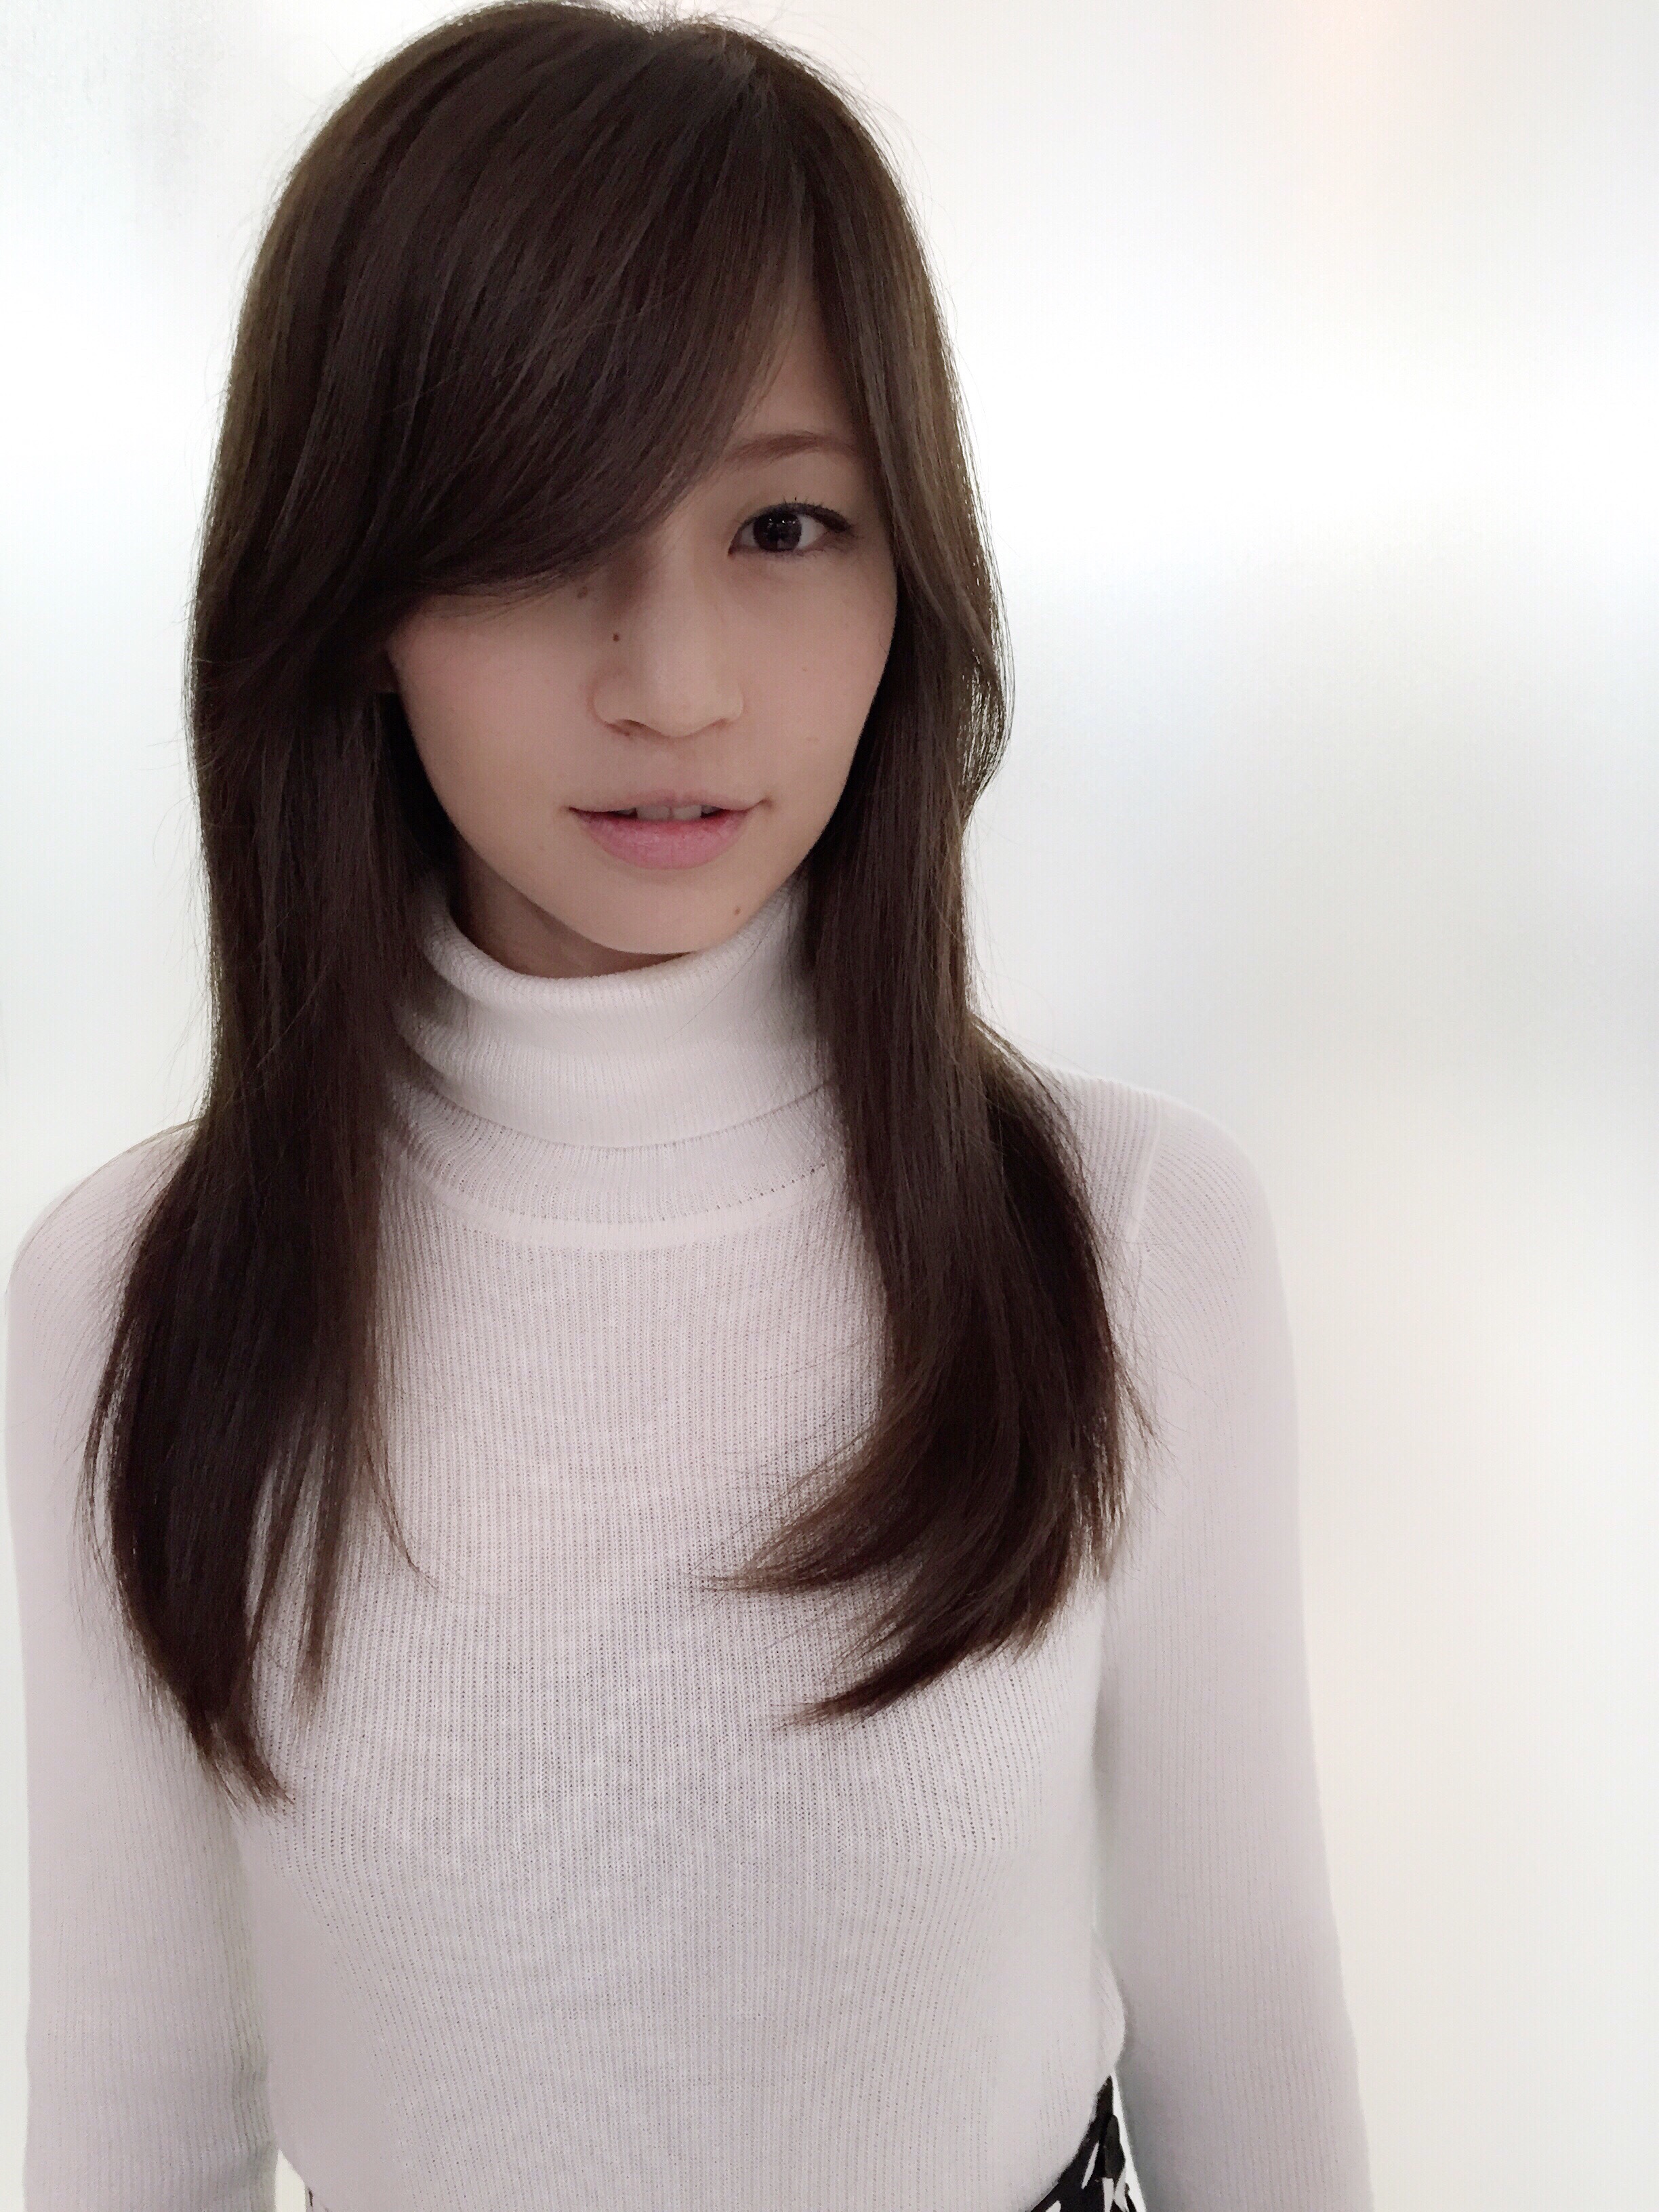 安田美沙子のかわいい高画質画像